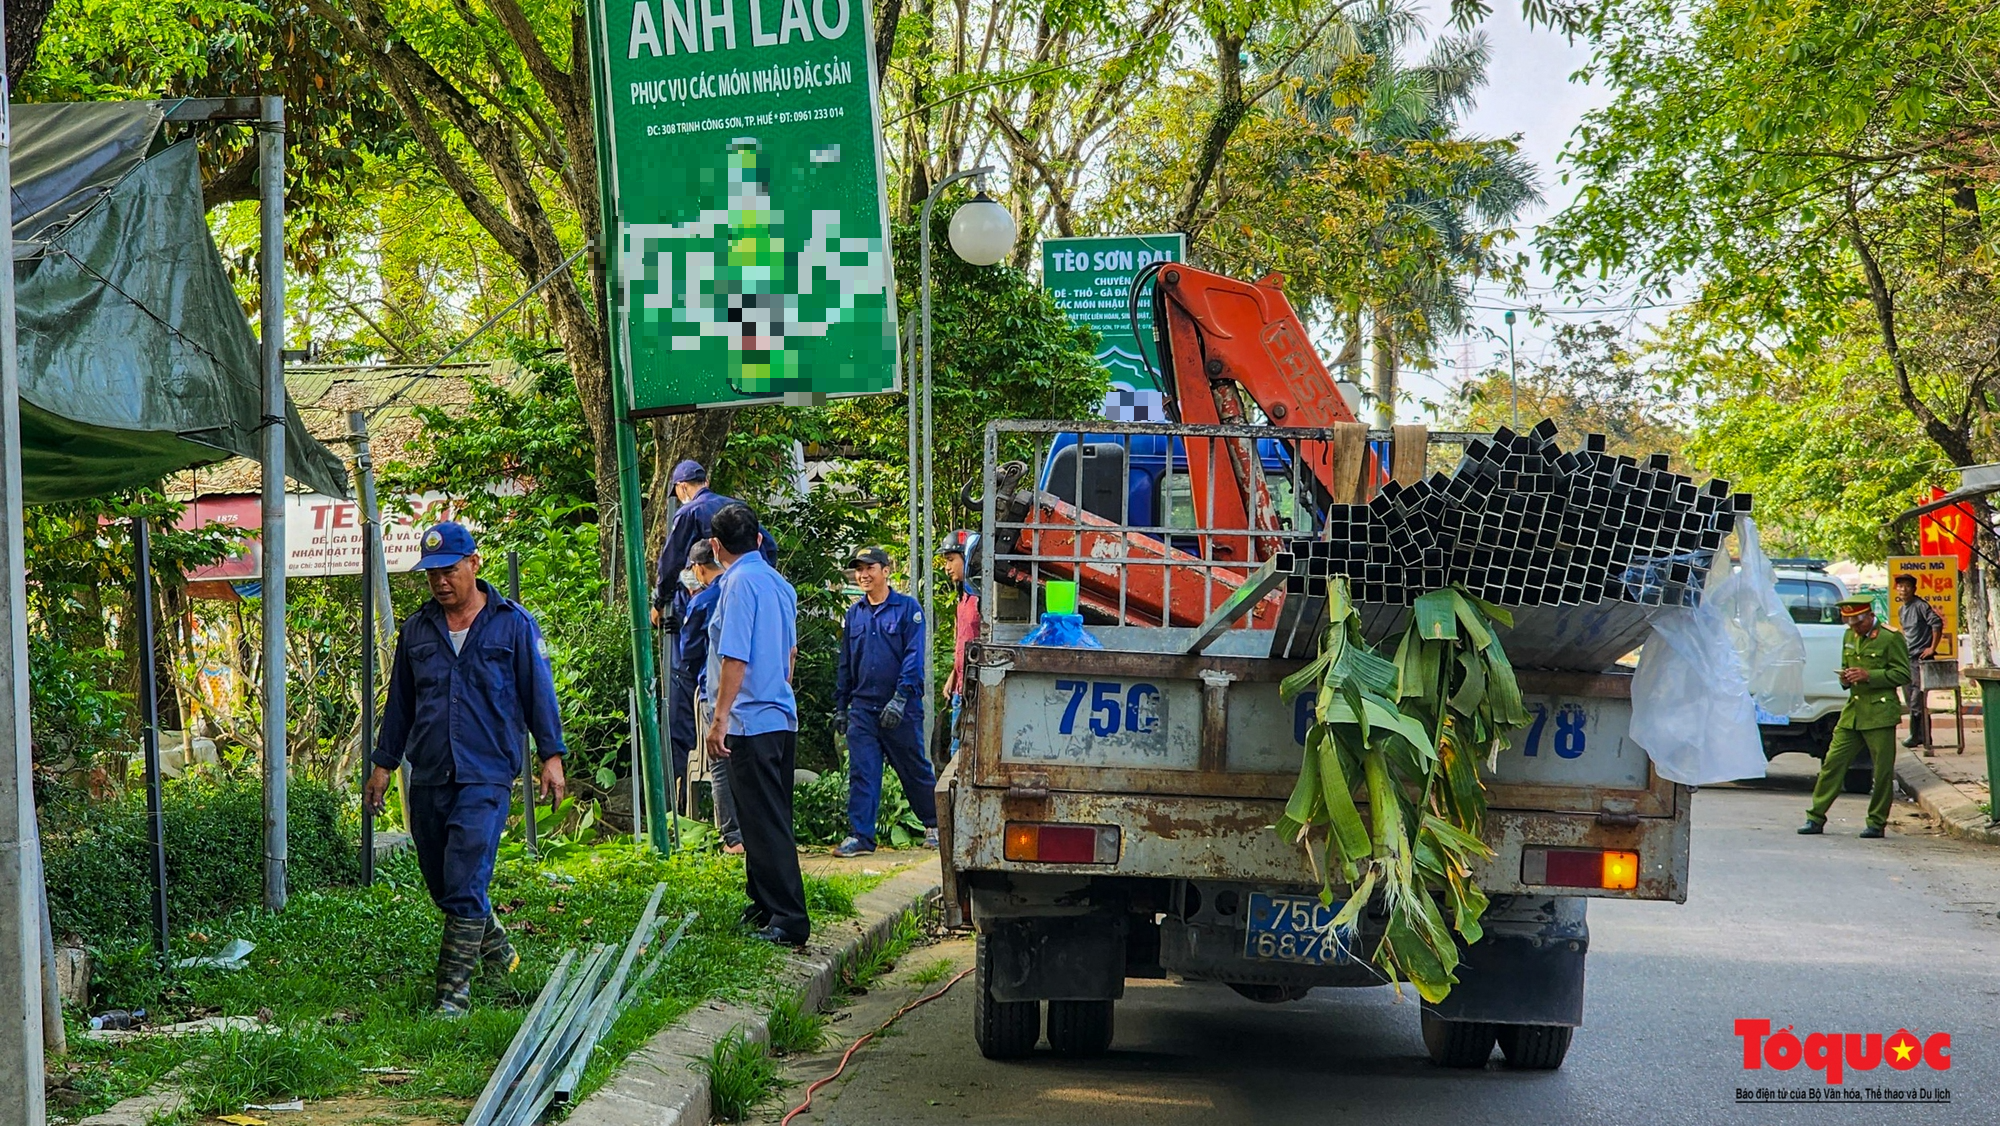 Mạnh tay xử lý hàng quán lấn chiếm trái phép, trả lại không gian cho công viên Trịnh Công Sơn - Ảnh 10.